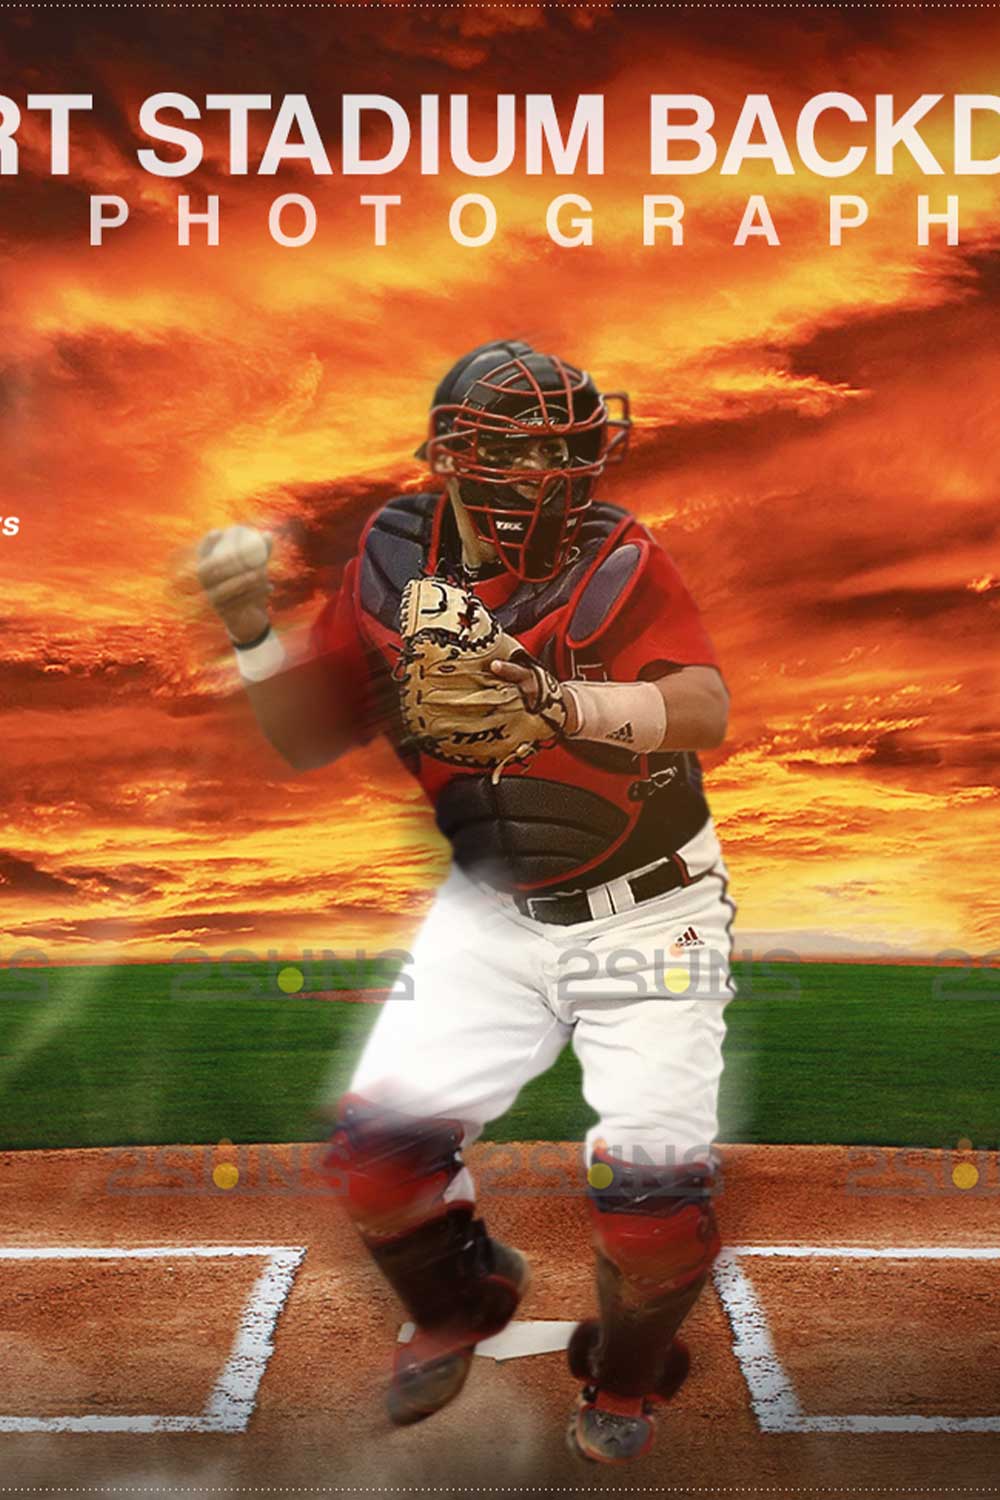 Baseball Backdrop Sports Digital Photoshop Background Pinterest Image.